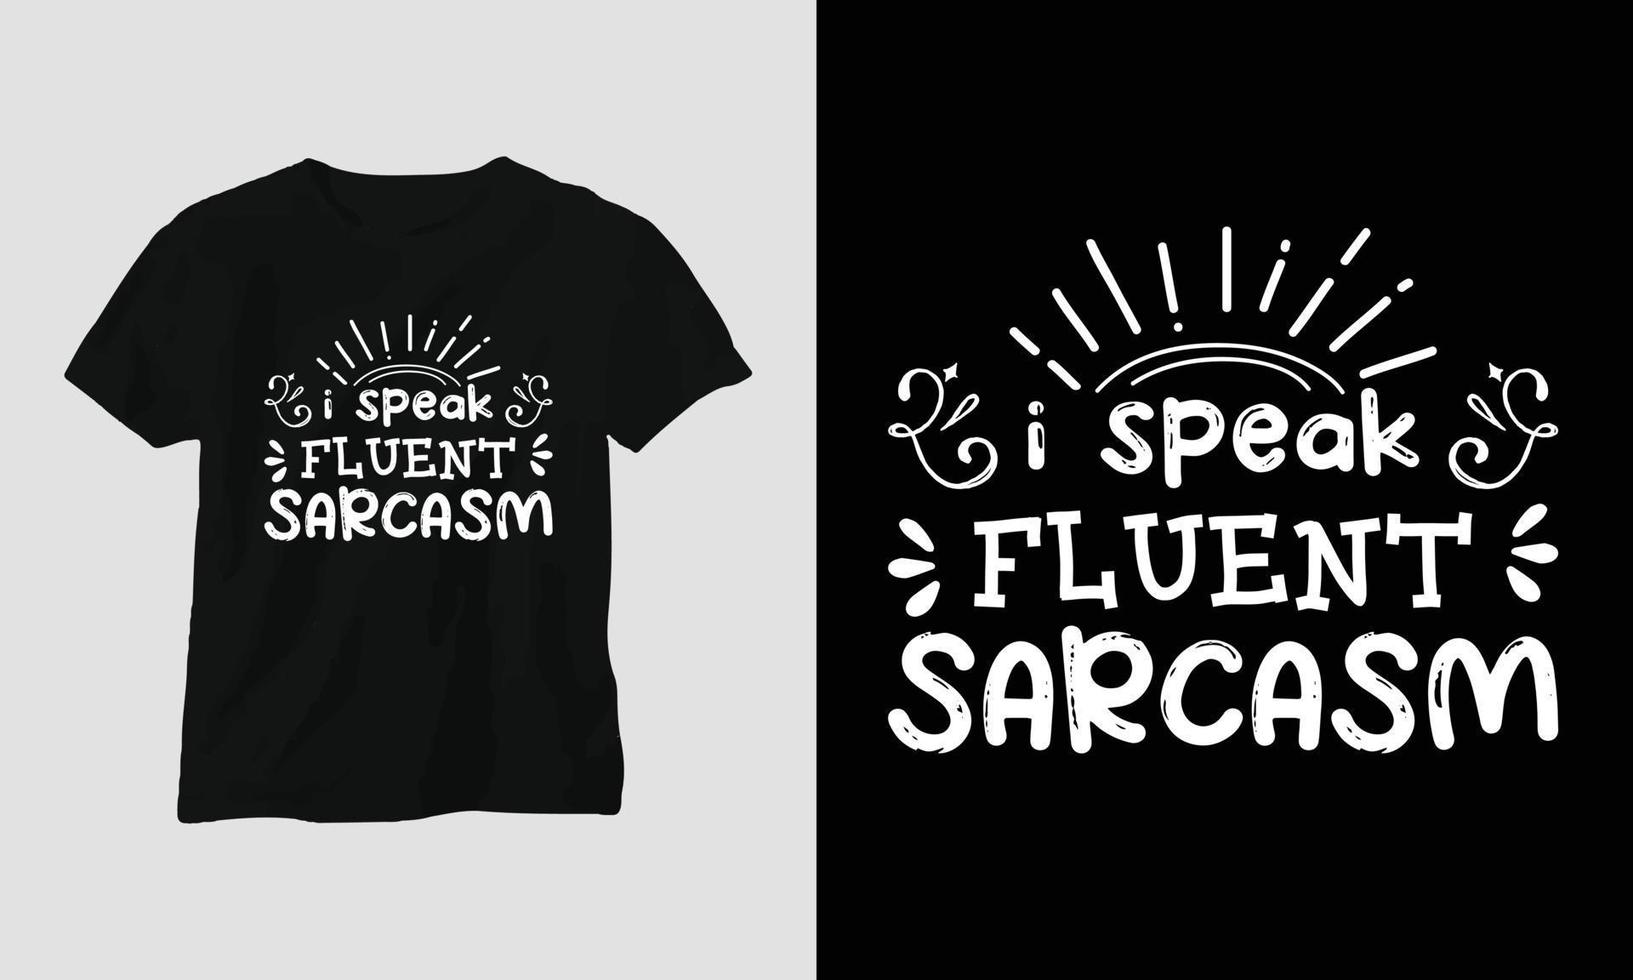 jag tala flytande sarkasm - t-shirt och kläder design. vektor skriva ut, typografi, affisch, emblem, festival, rolig, sarkastisk humör, silhuett